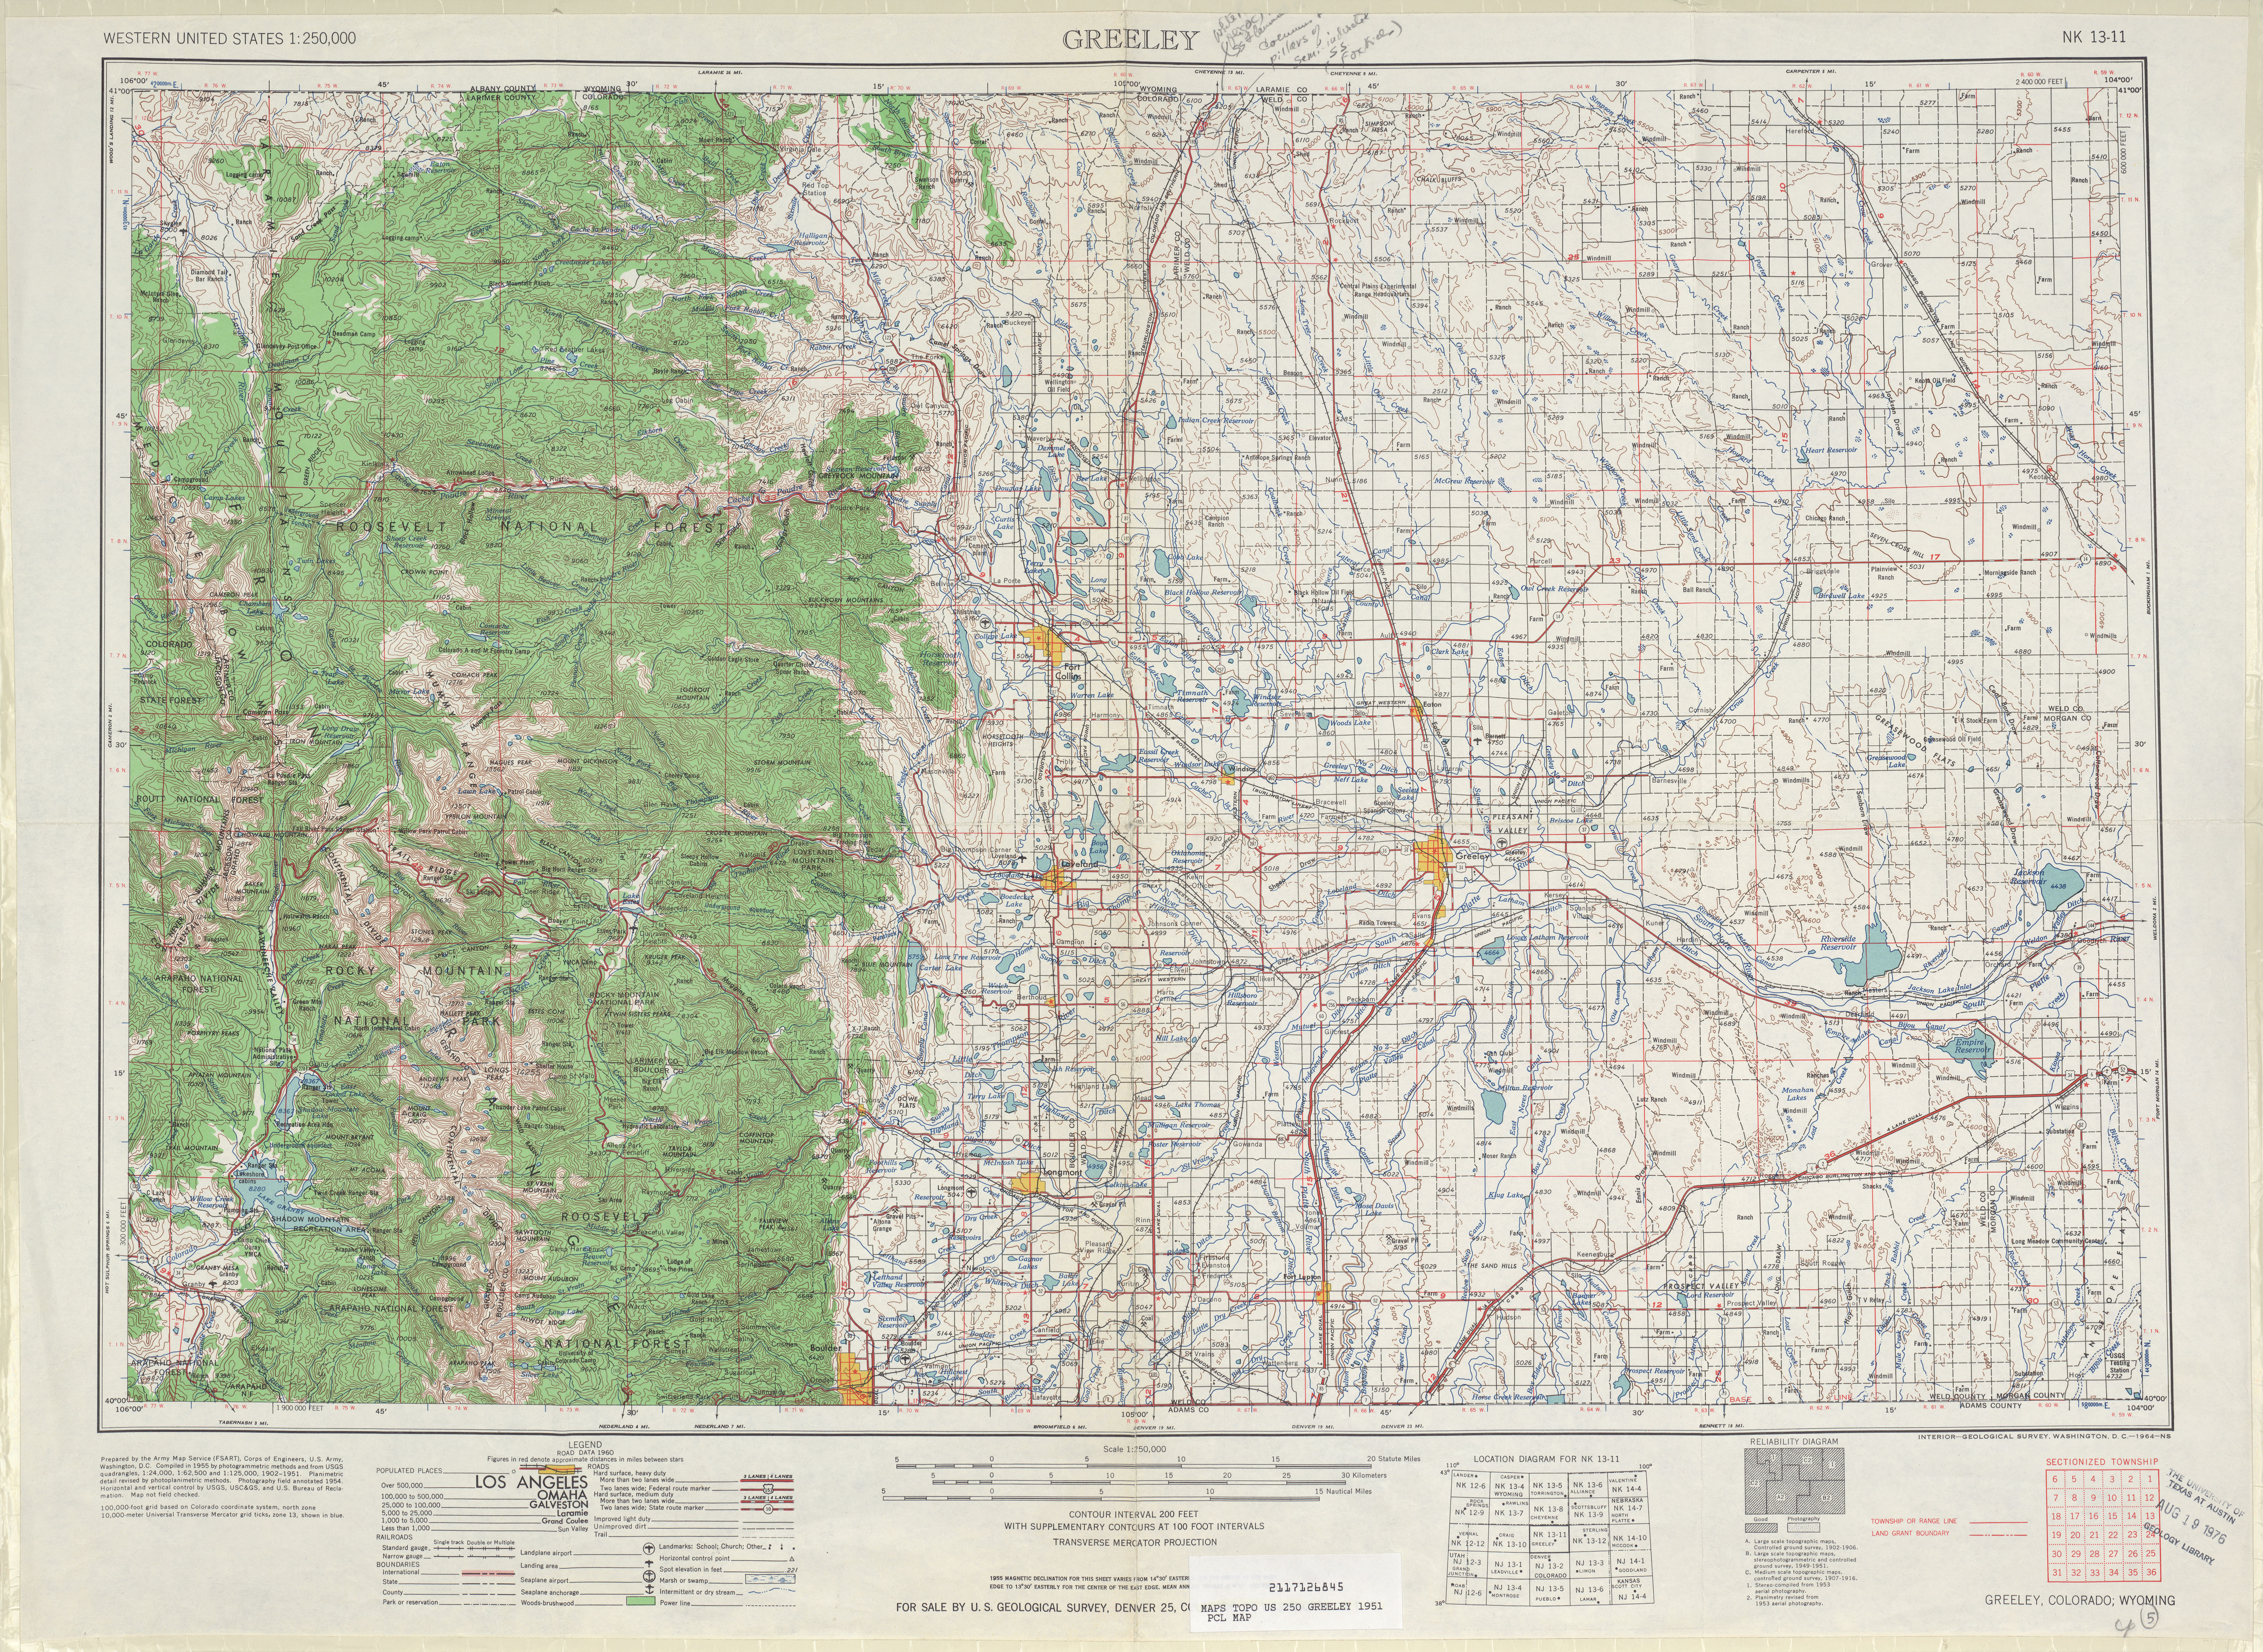 Hoja Greeley del Mapa Topográfico de los Estados Unidos 1954